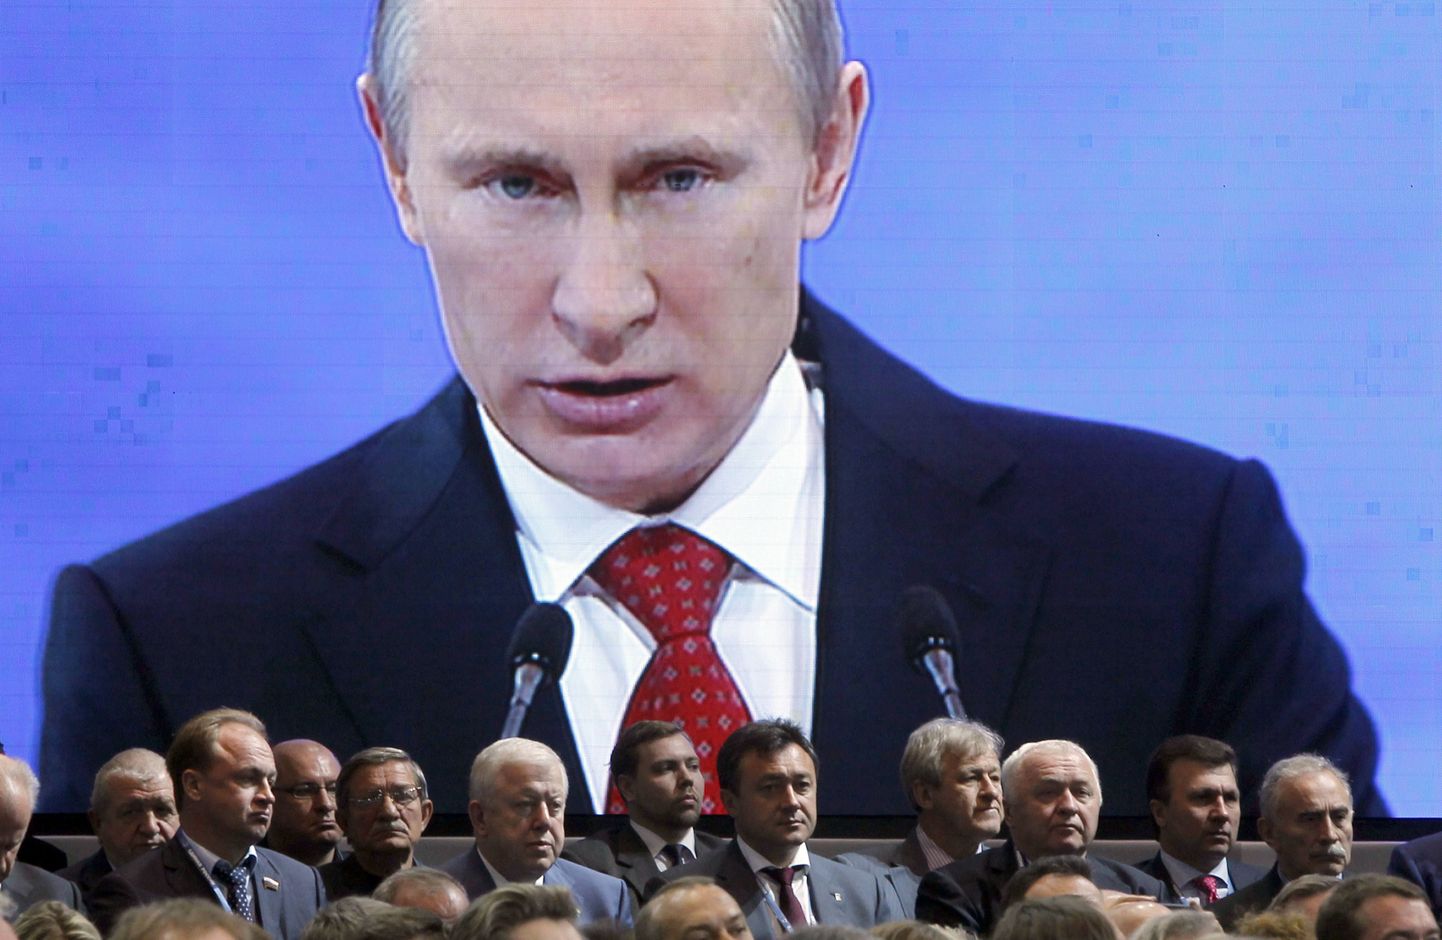 Ühtse Venemaa kongressil astus kõnepulti ka president Vladimir Putin, keda sai lähemalt uurida ekraani vahendusel.